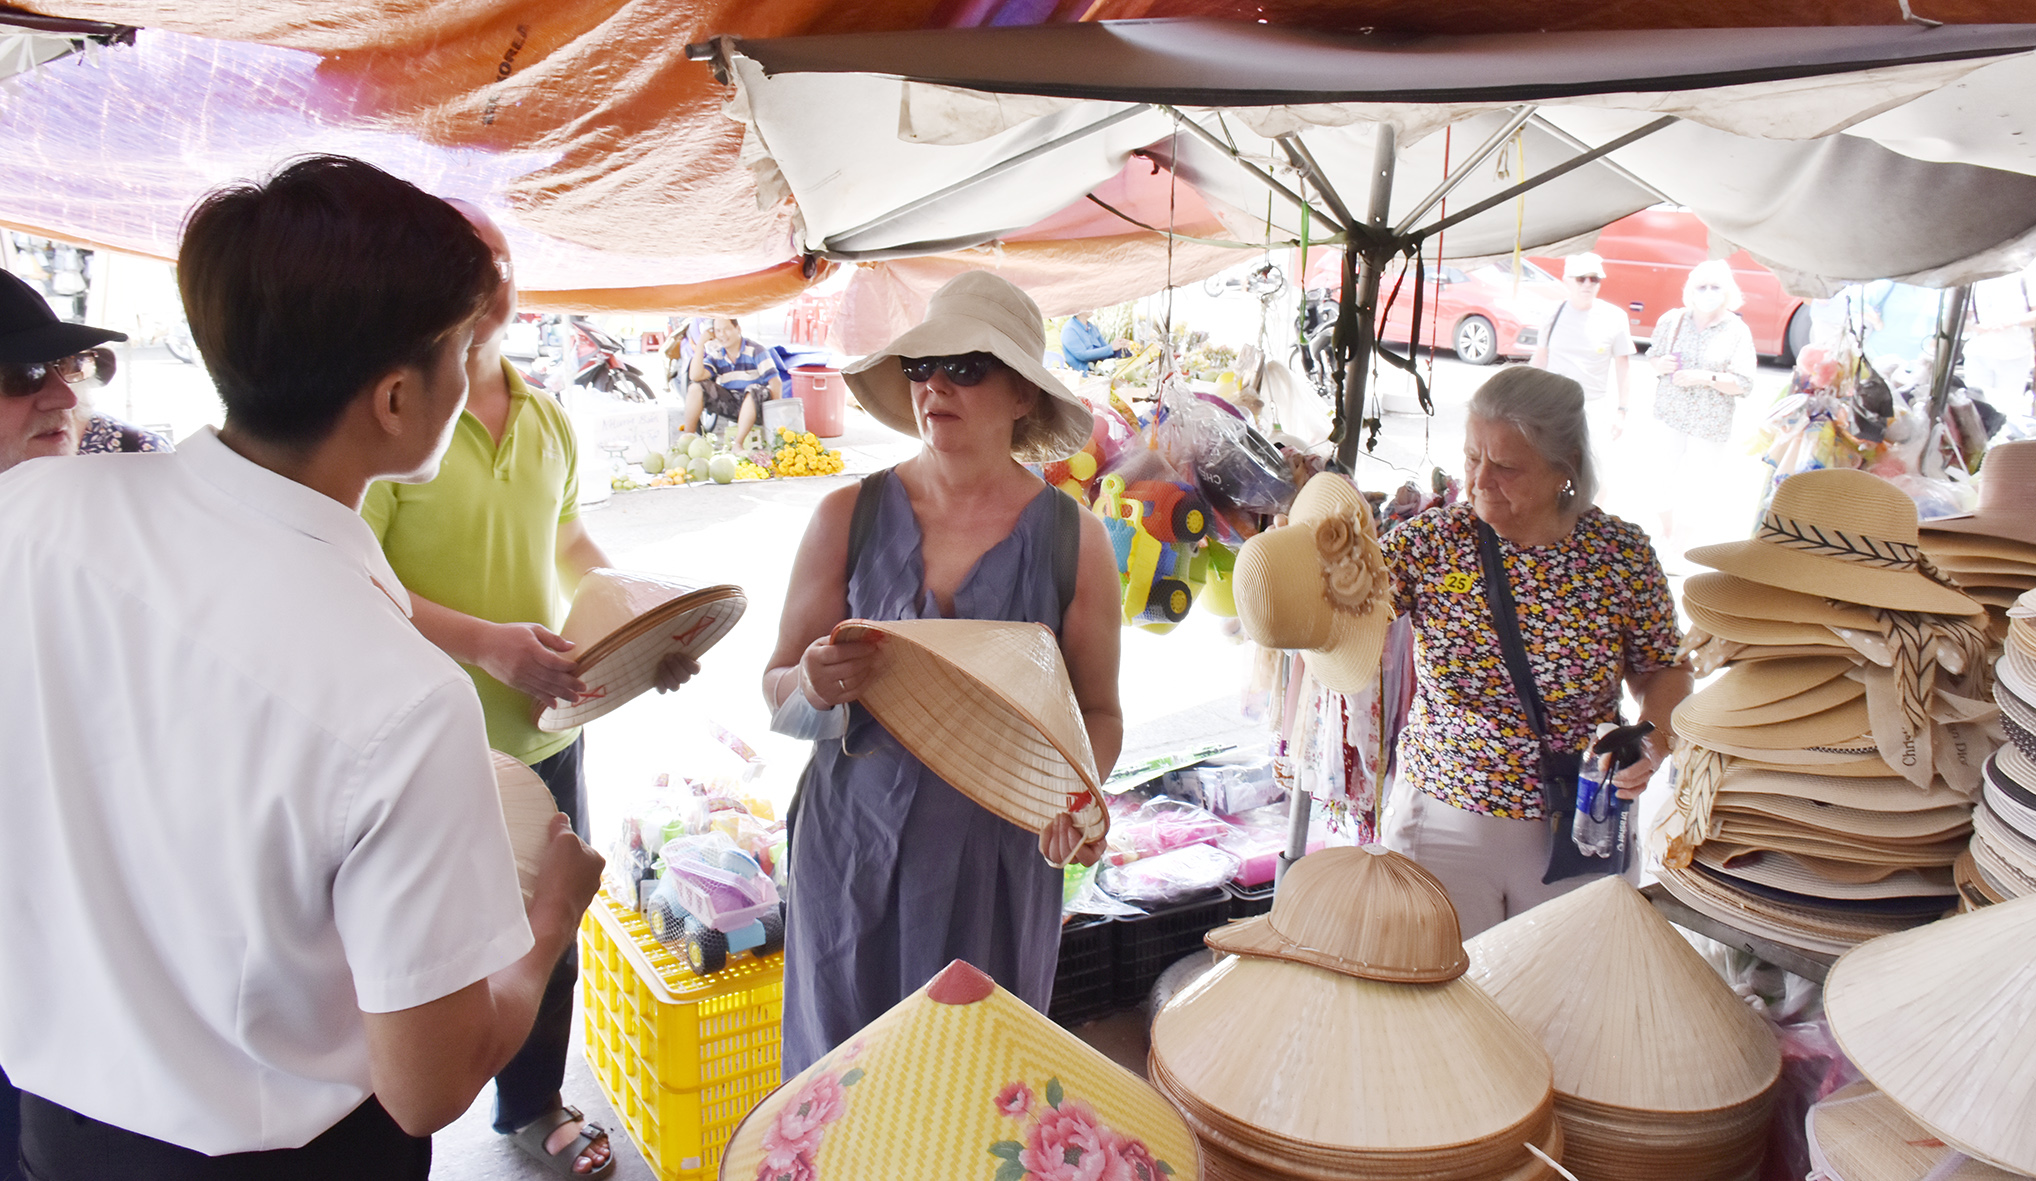 Nón lá cũng là mặt hàng du khách chú ý tìm mua khi tham quan chợ Hòa Long.